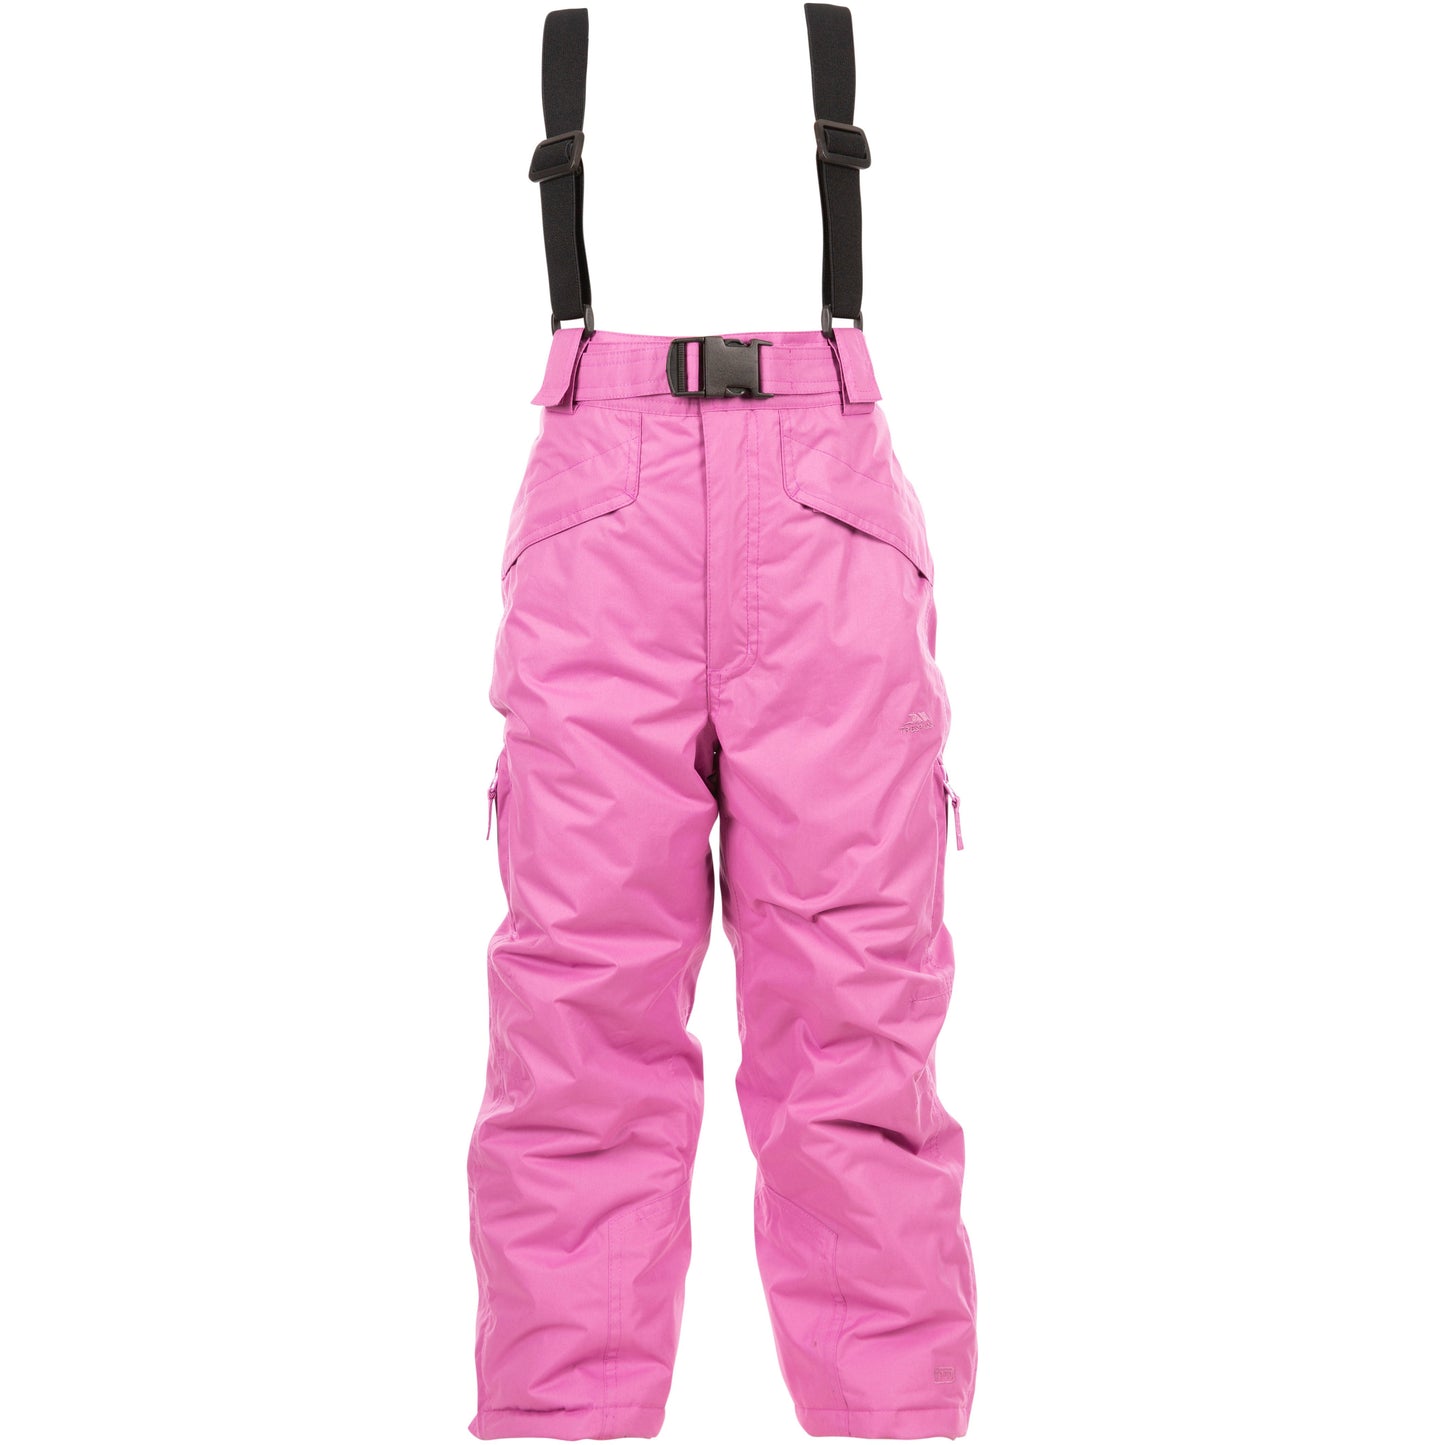 Marvelous Kids Ski Trousers in Deep Pink